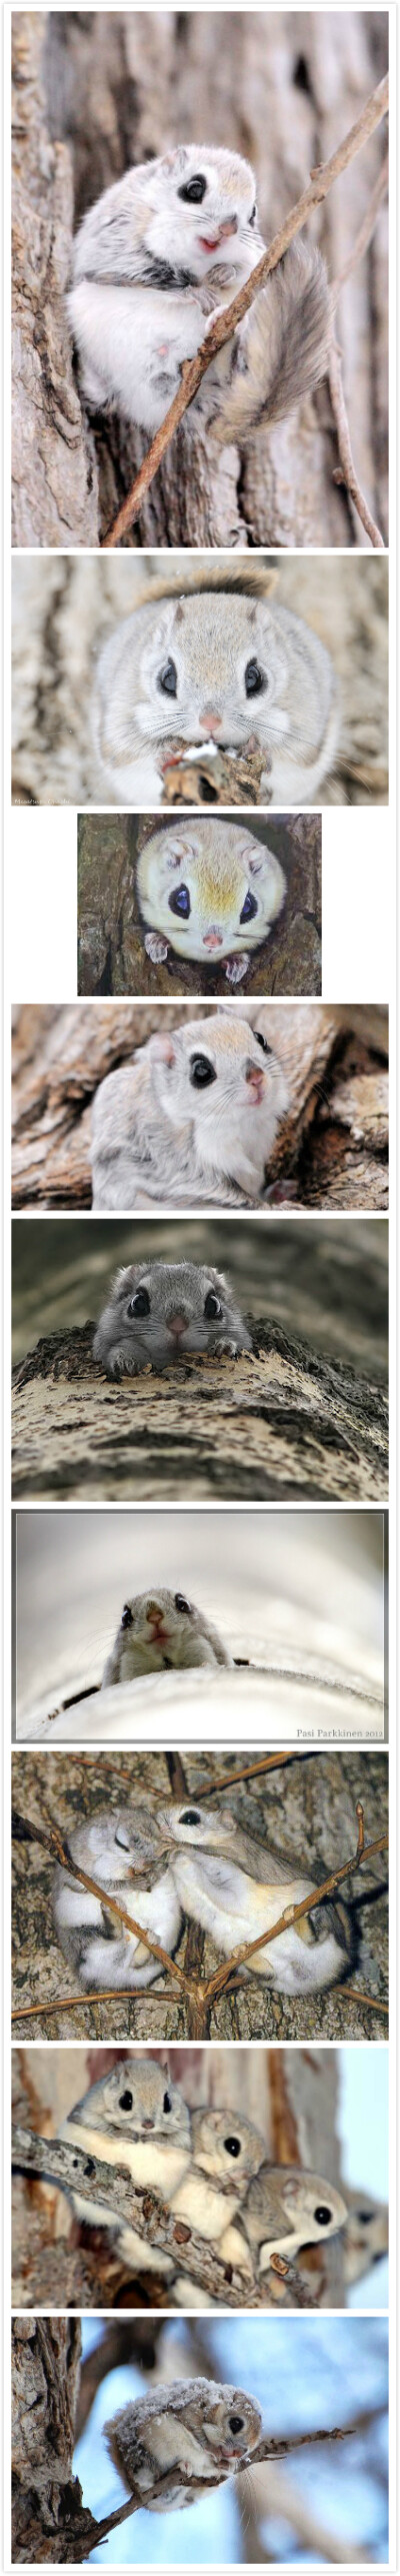 【西伯利亚鼯鼠】这个画了眼线,涂了唇彩的小萌物,也称俄罗斯鼯鼠